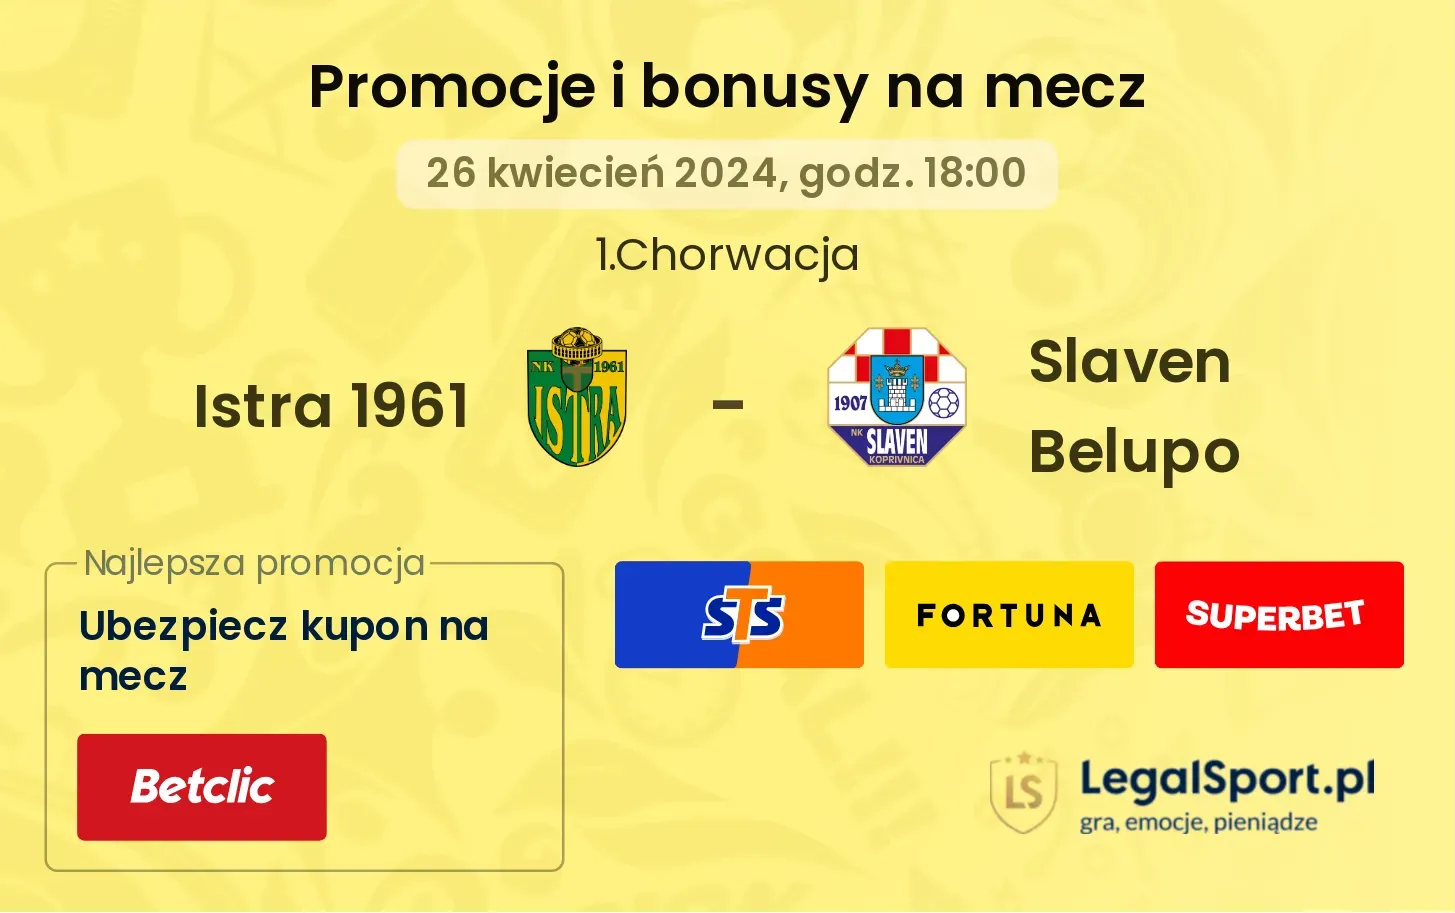 Istra 1961 - Slaven Belupo promocje bonusy na mecz